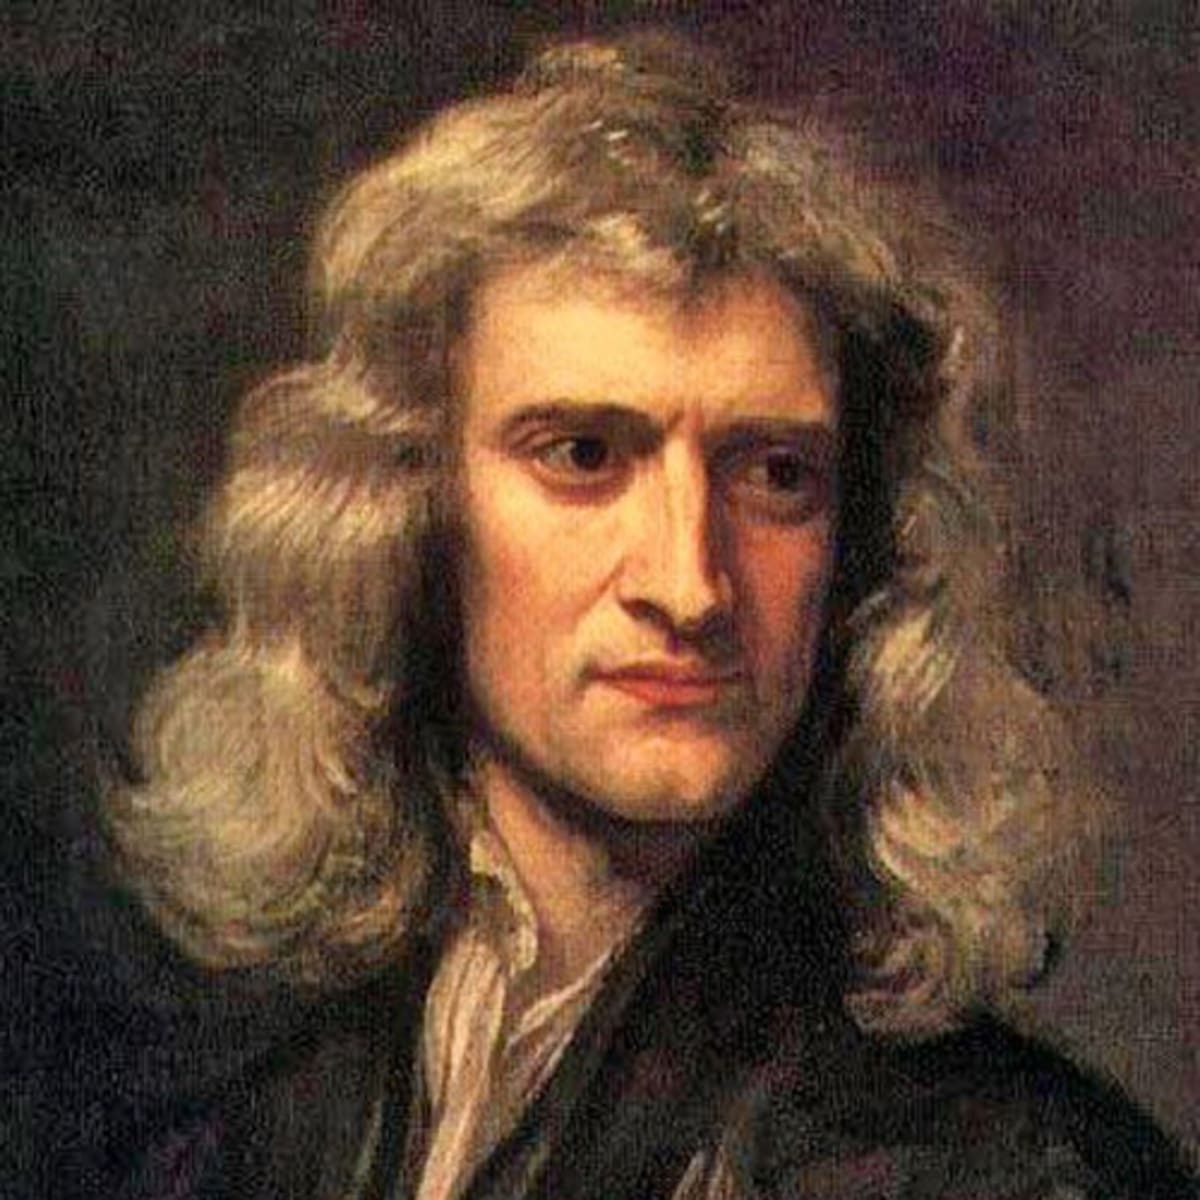 Isaac Newton Biography In Hindi